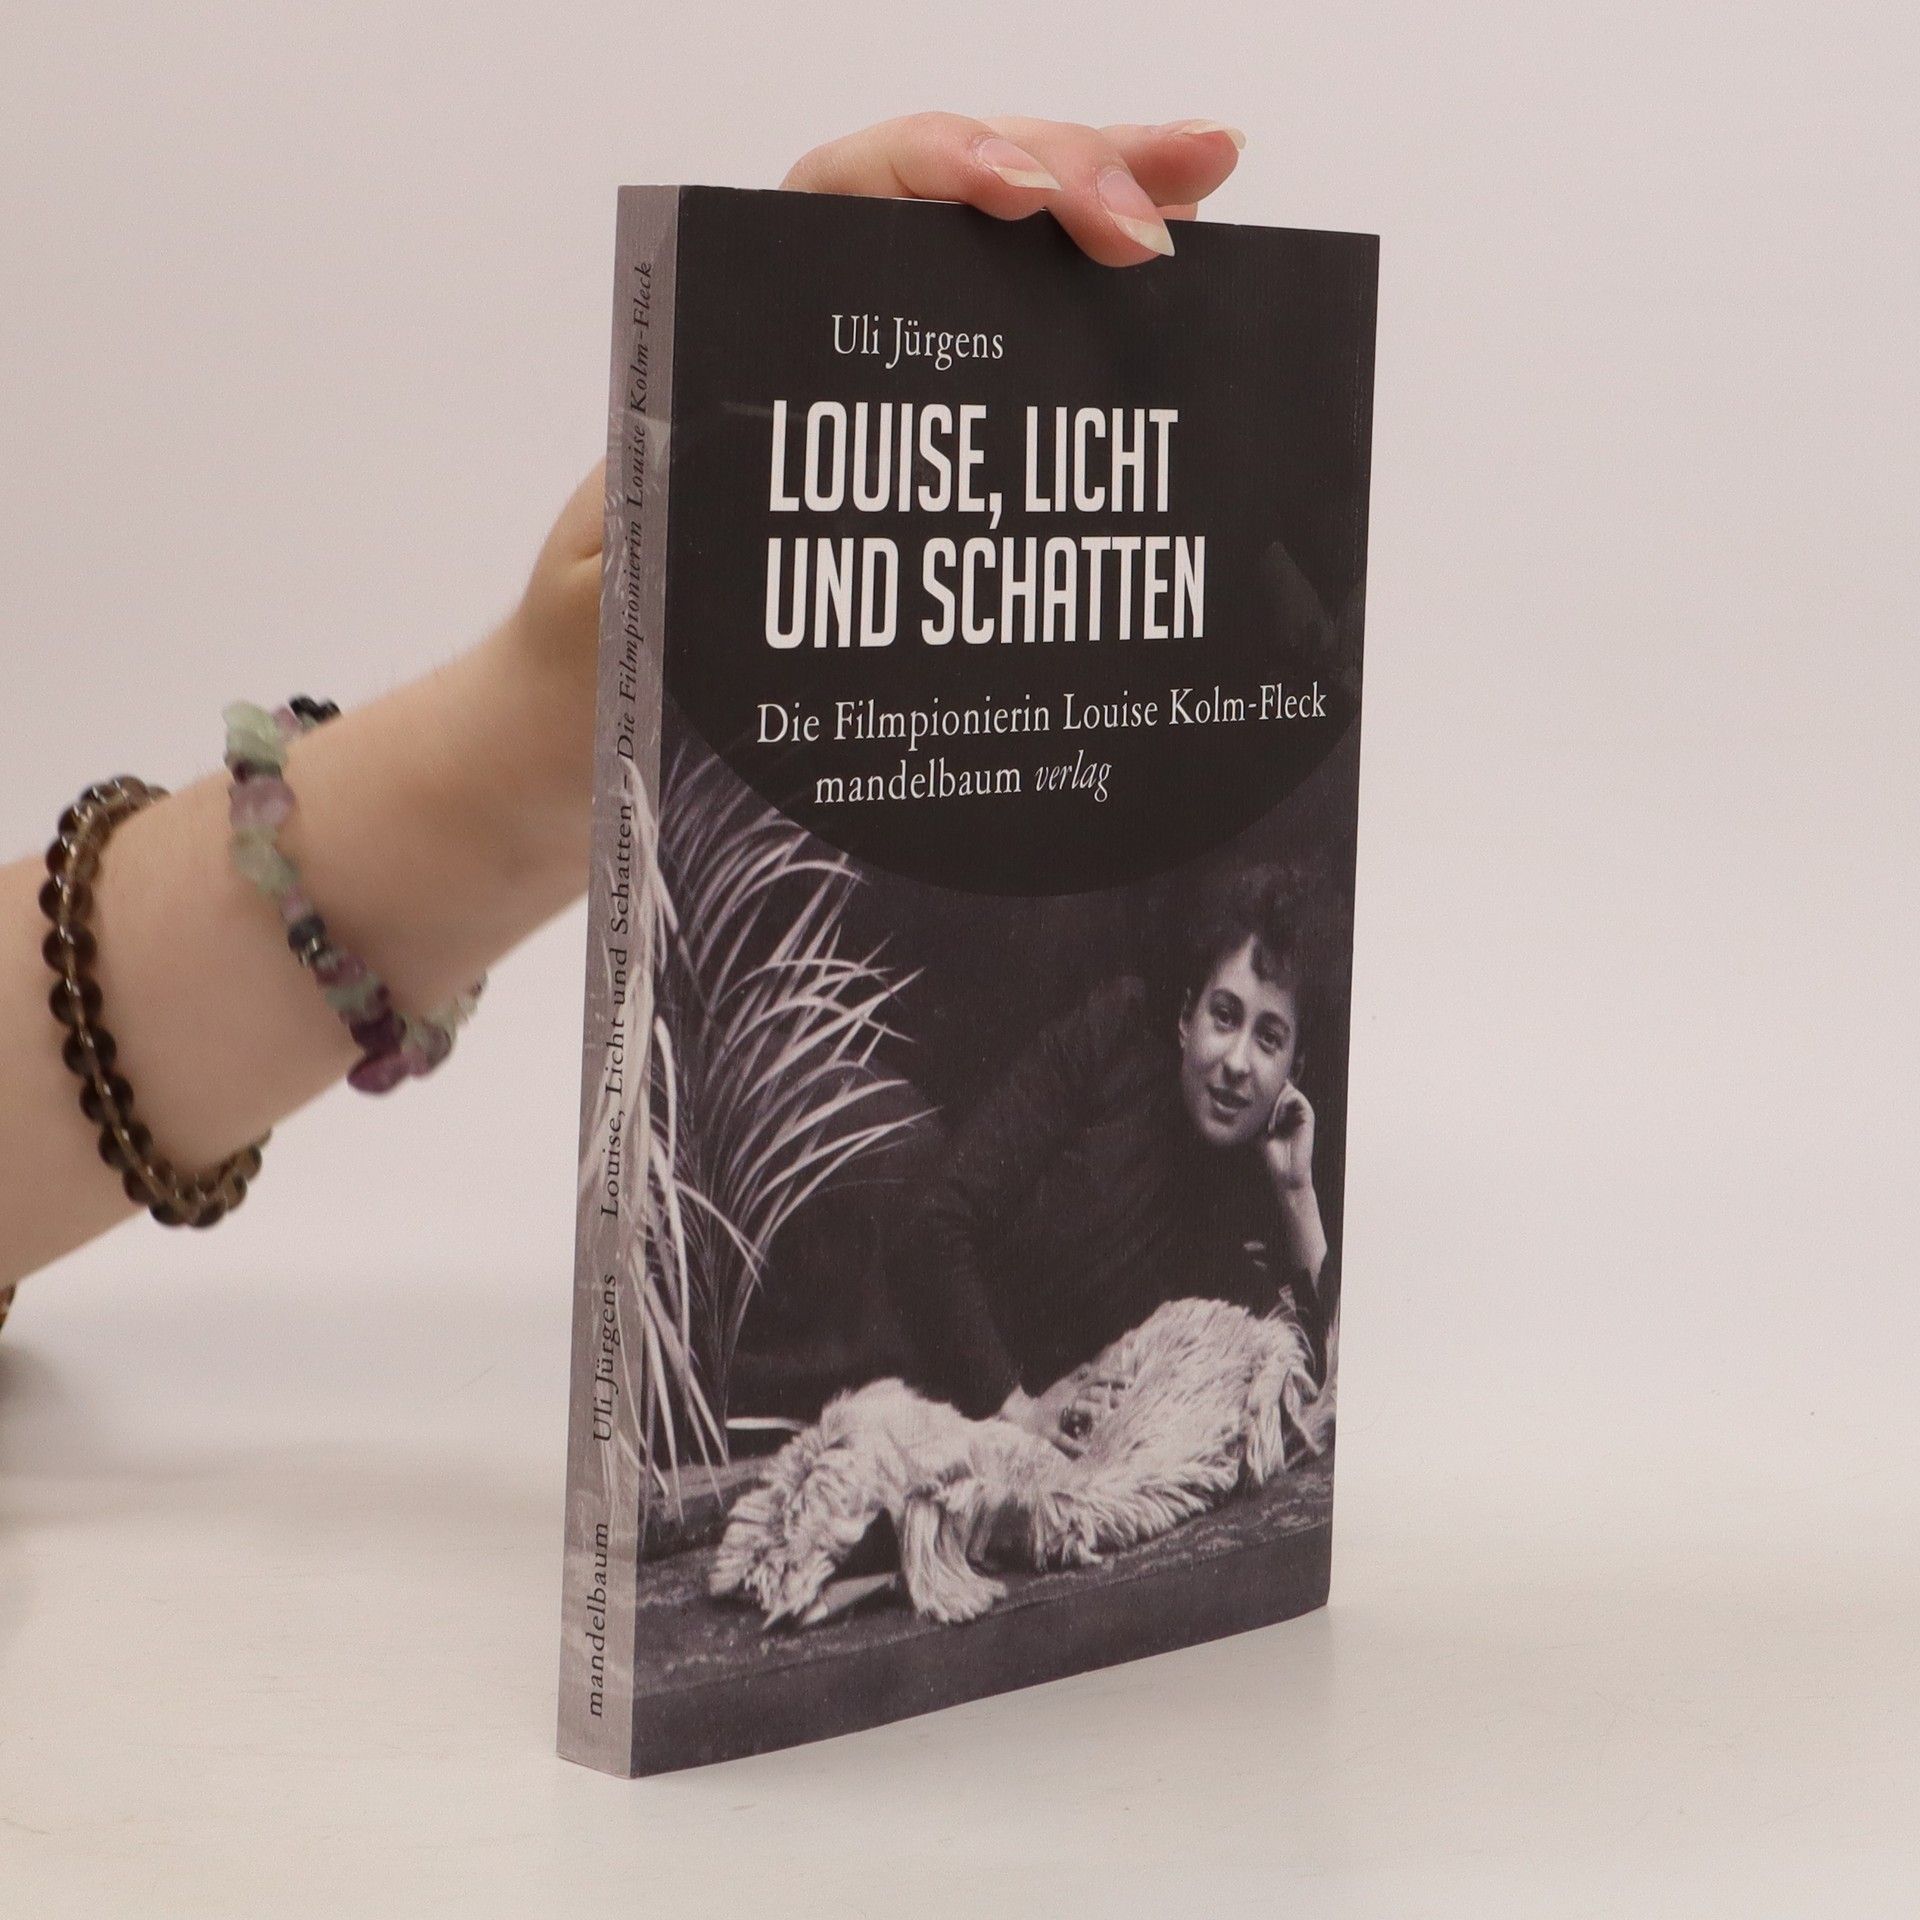 Louise, Licht und Schatten : die Filmpionierin Louise Kolm-Fleck - Uli Ju rgens